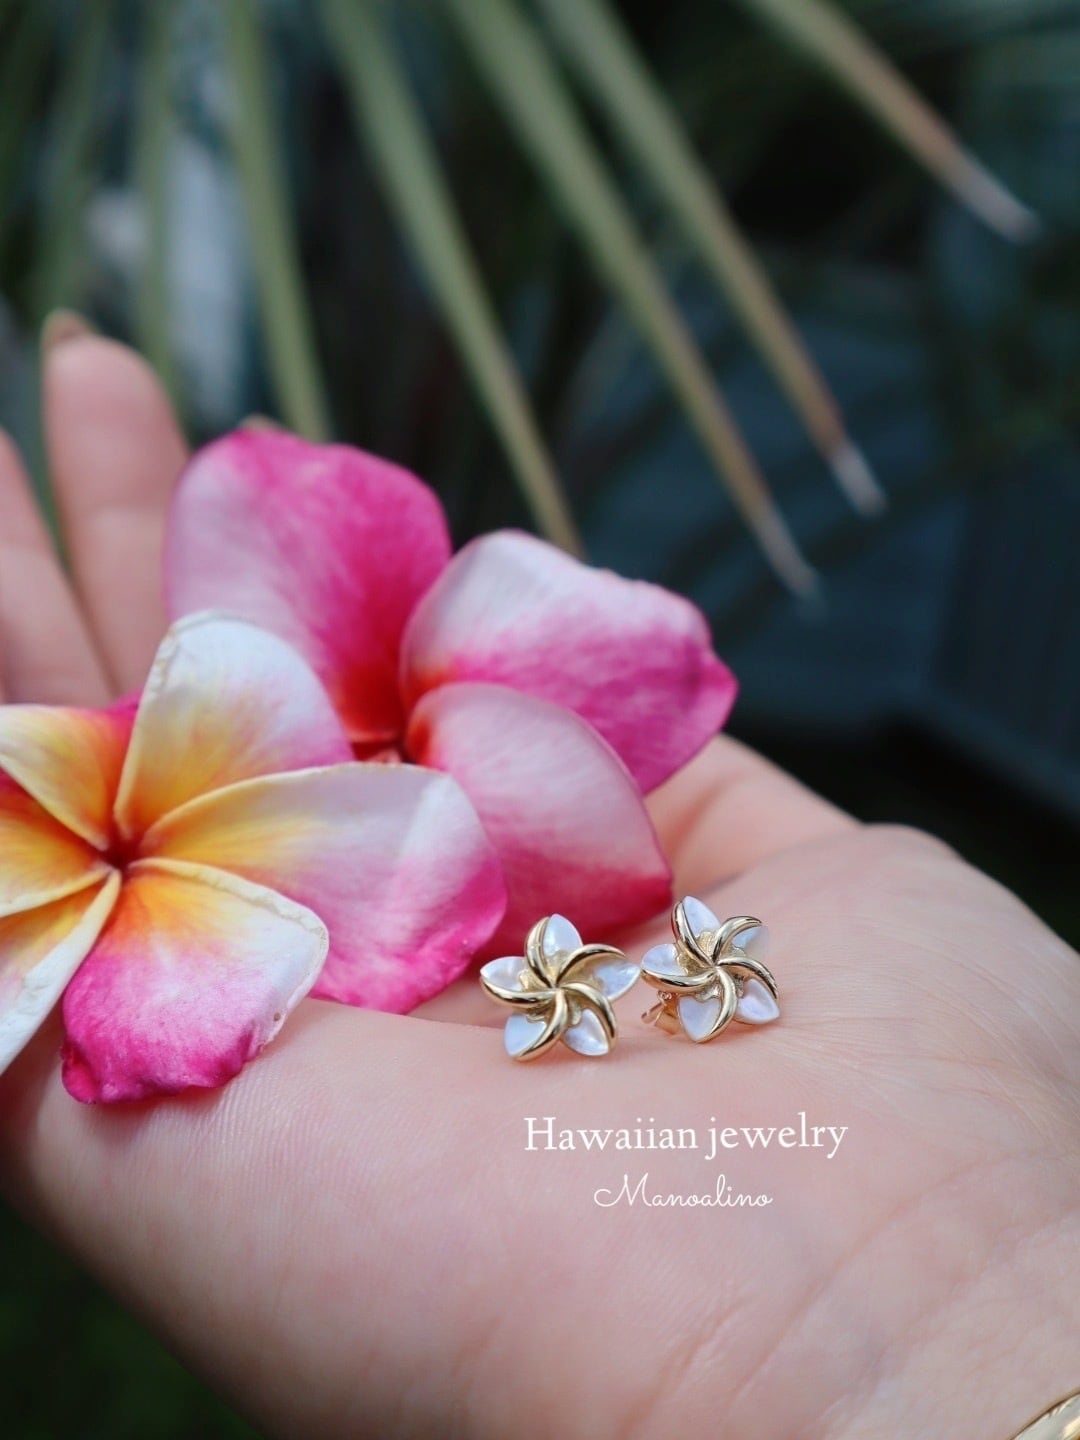 Plumeria(プルメリア) | Manoalino 【Hawaiianjewelry